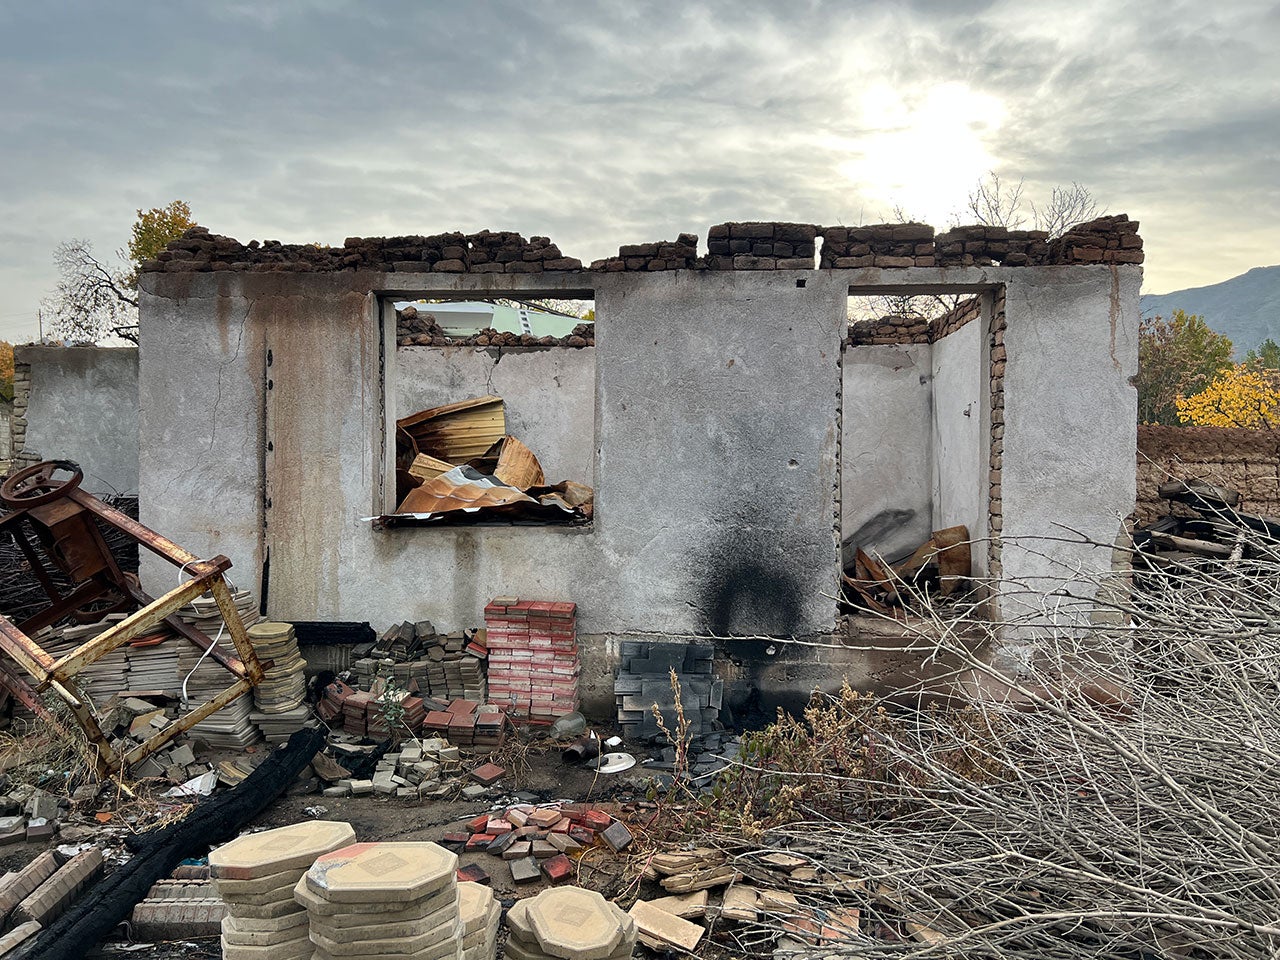 Выгоревшая постройка в селении Достук Баткенского района Кыргызстана. Это селение было полностью сожжено 16 сентября 2022 г., когда находилось под кратковременным контролем таджикистанских сил. © 2022 Jean-Baptiste Gallopin/Human Rights Watch